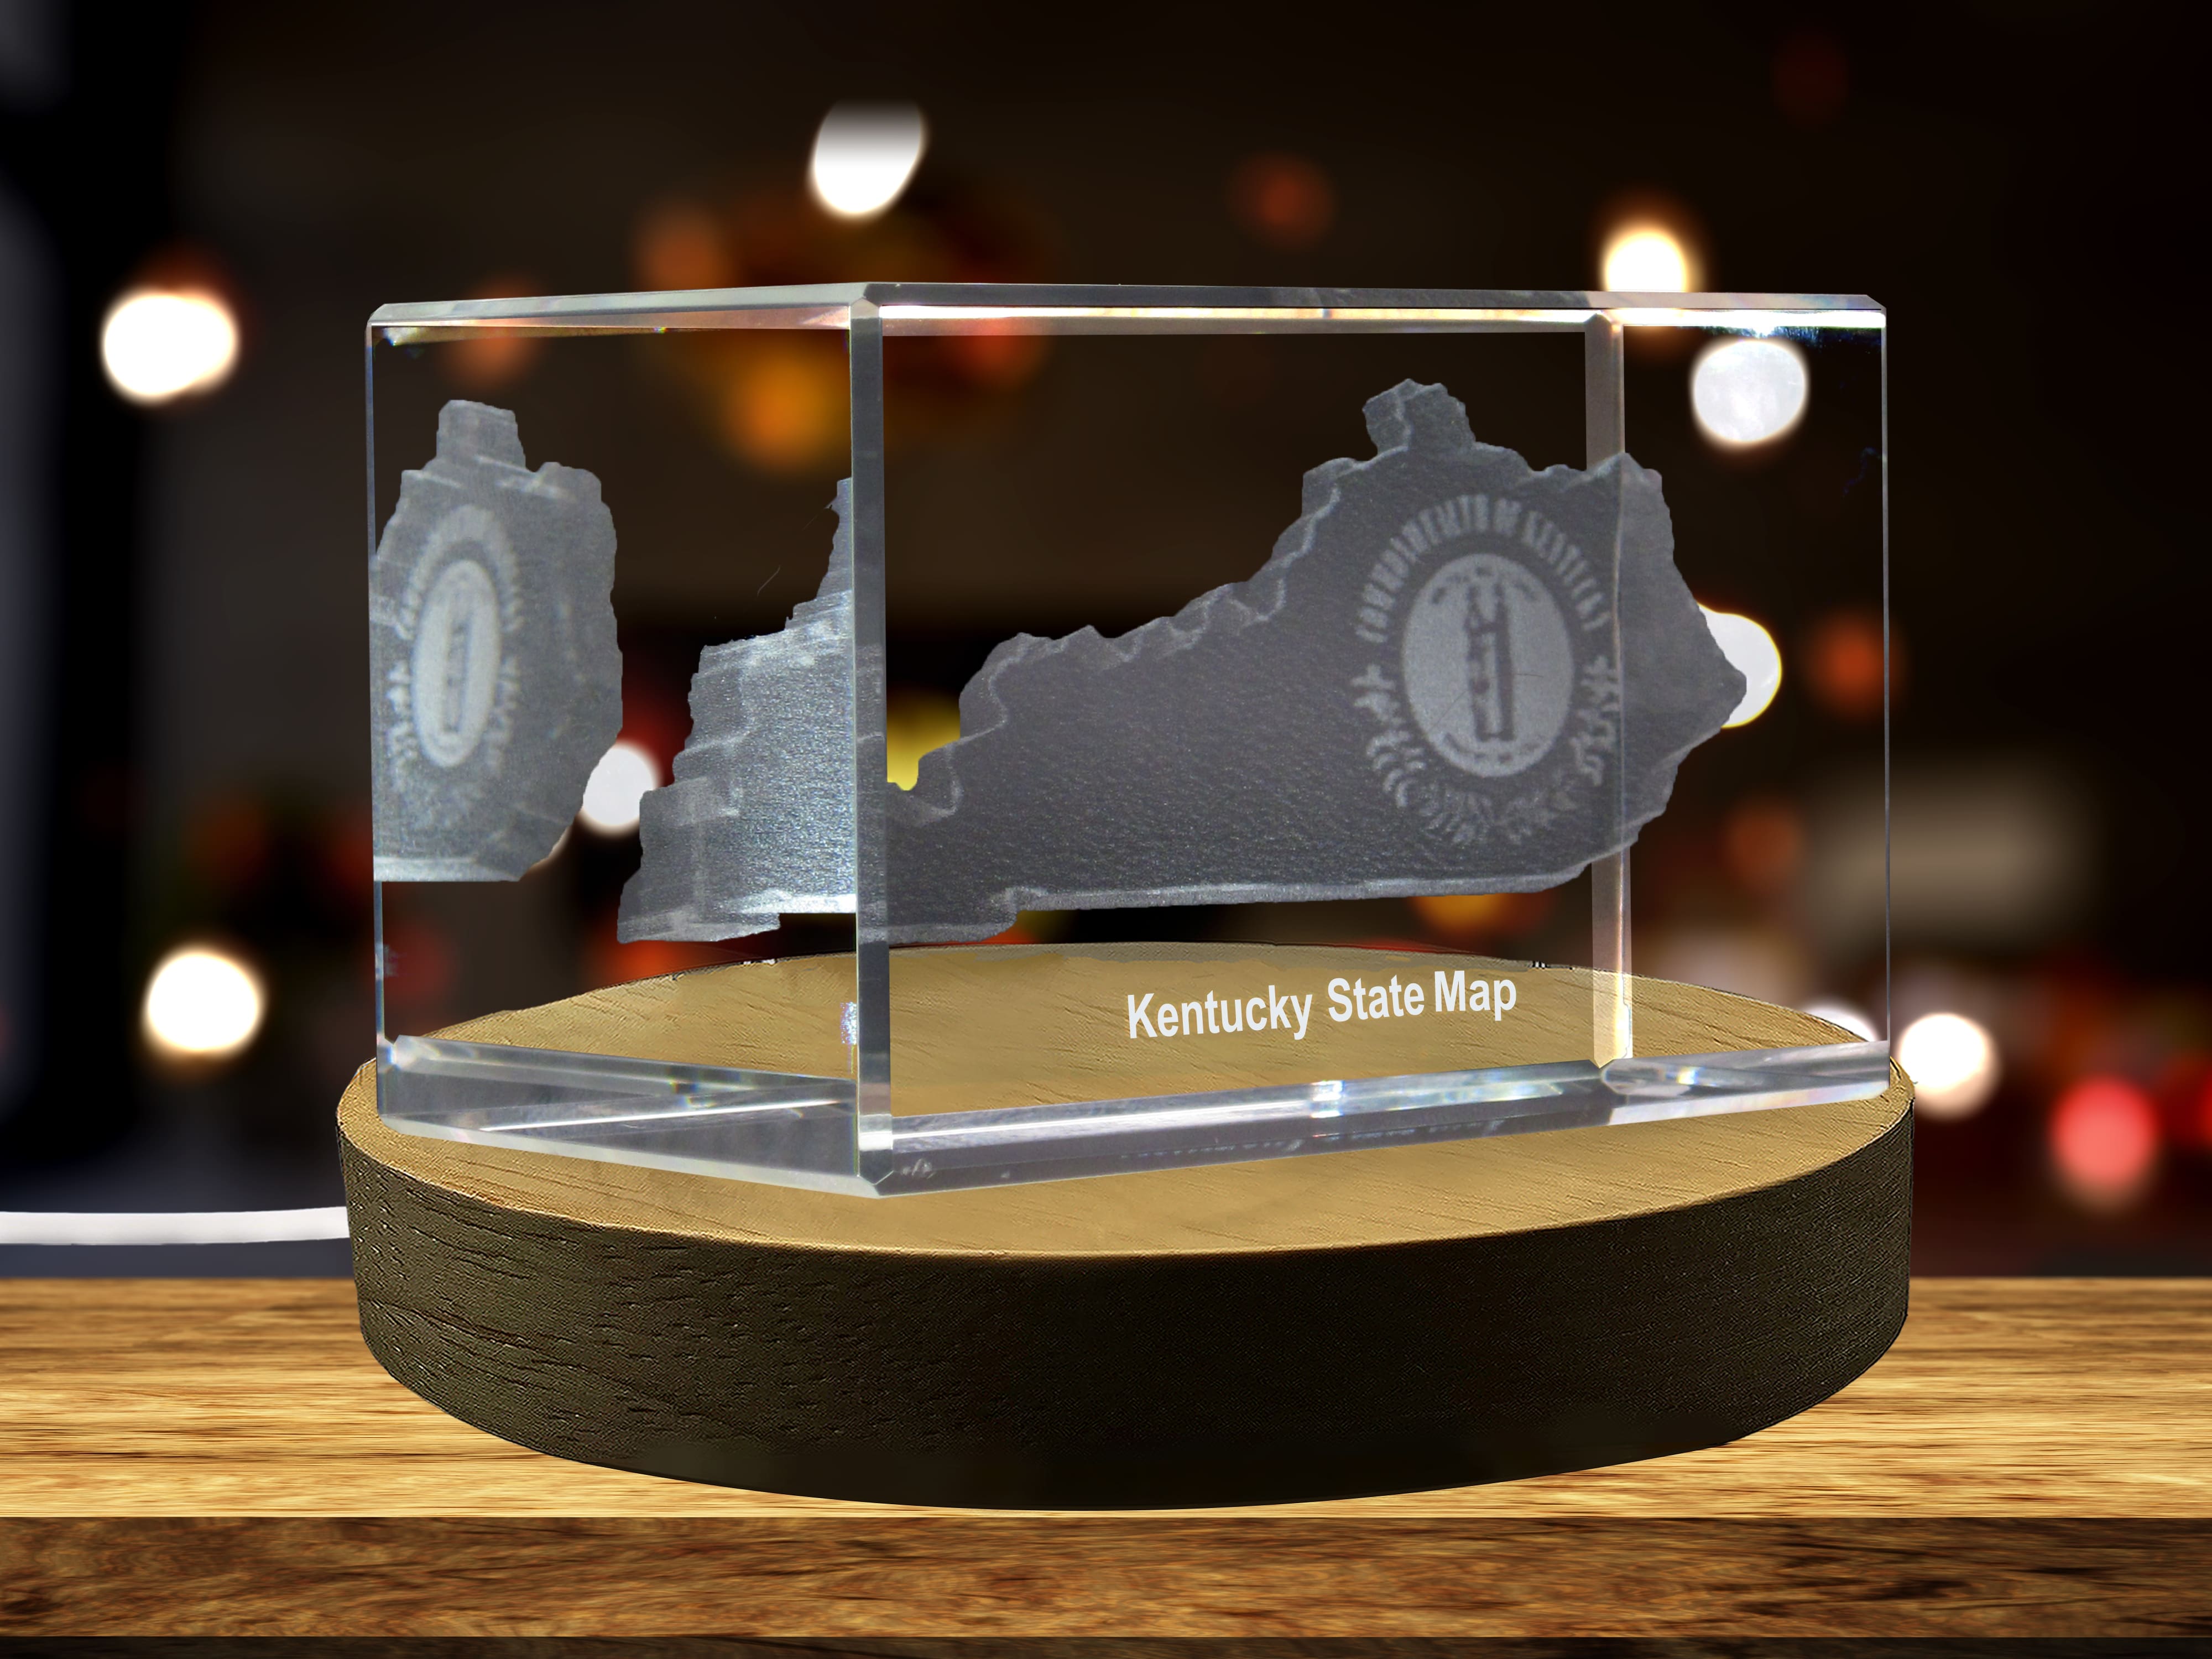 Kentucky 3D Engraved Crystal 3D Engraved Crystal Keepsake/Gift/Decor/Collectible/Souvenir A&B Crystal Collection